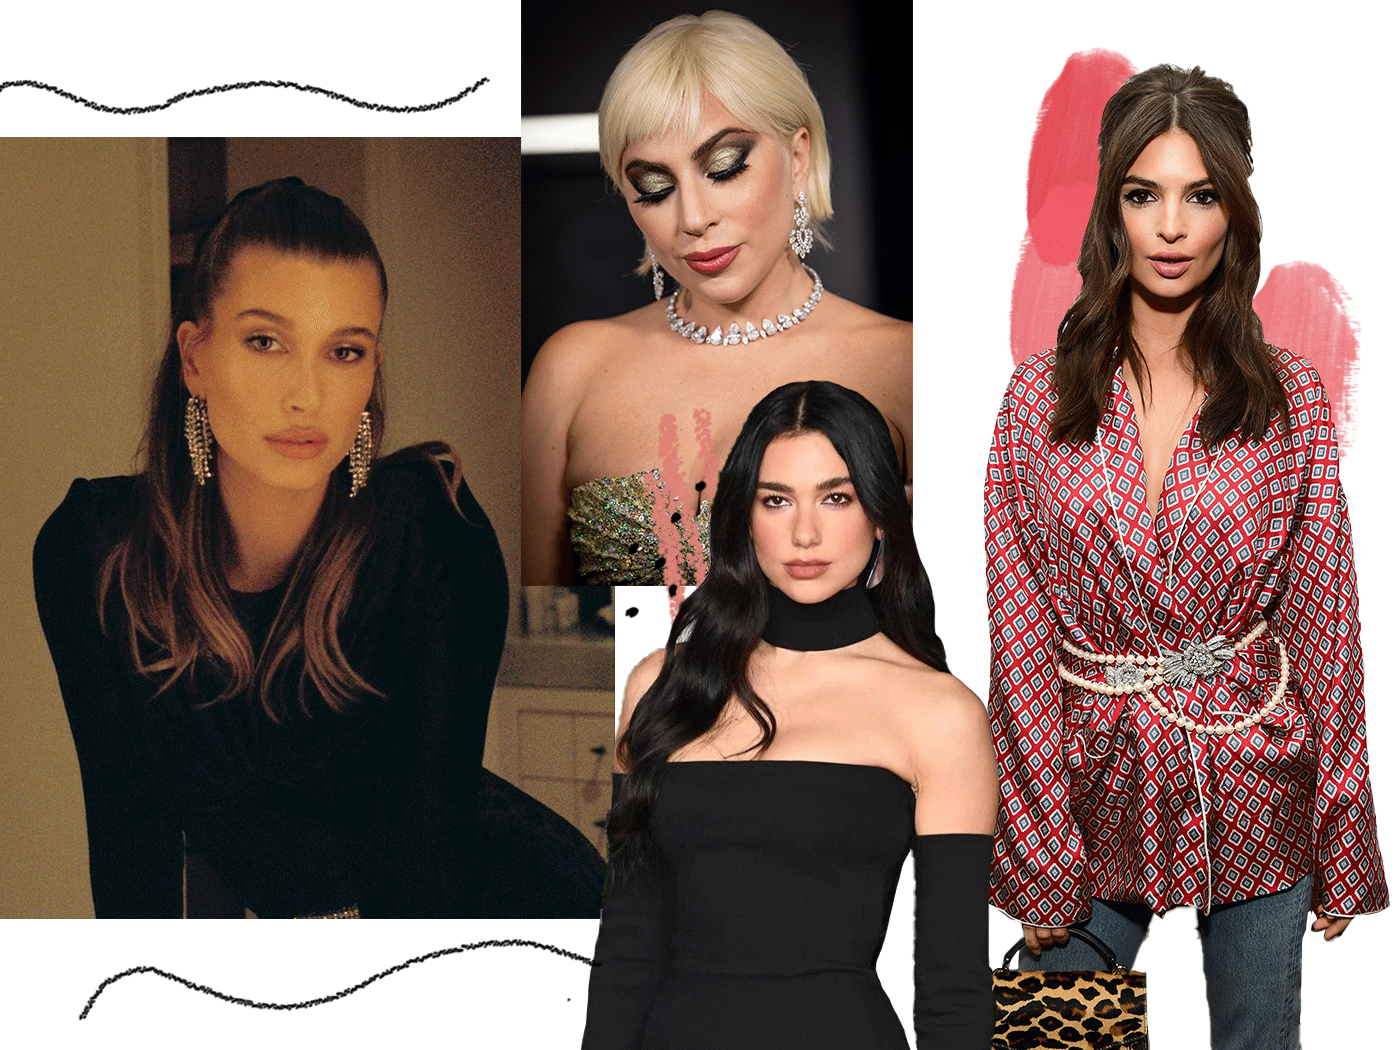 Οι celebrities έχουν ήδη υιοθετήσει τα μεγαλύτερα hair trends που μπορείς να αντιγράψεις asap